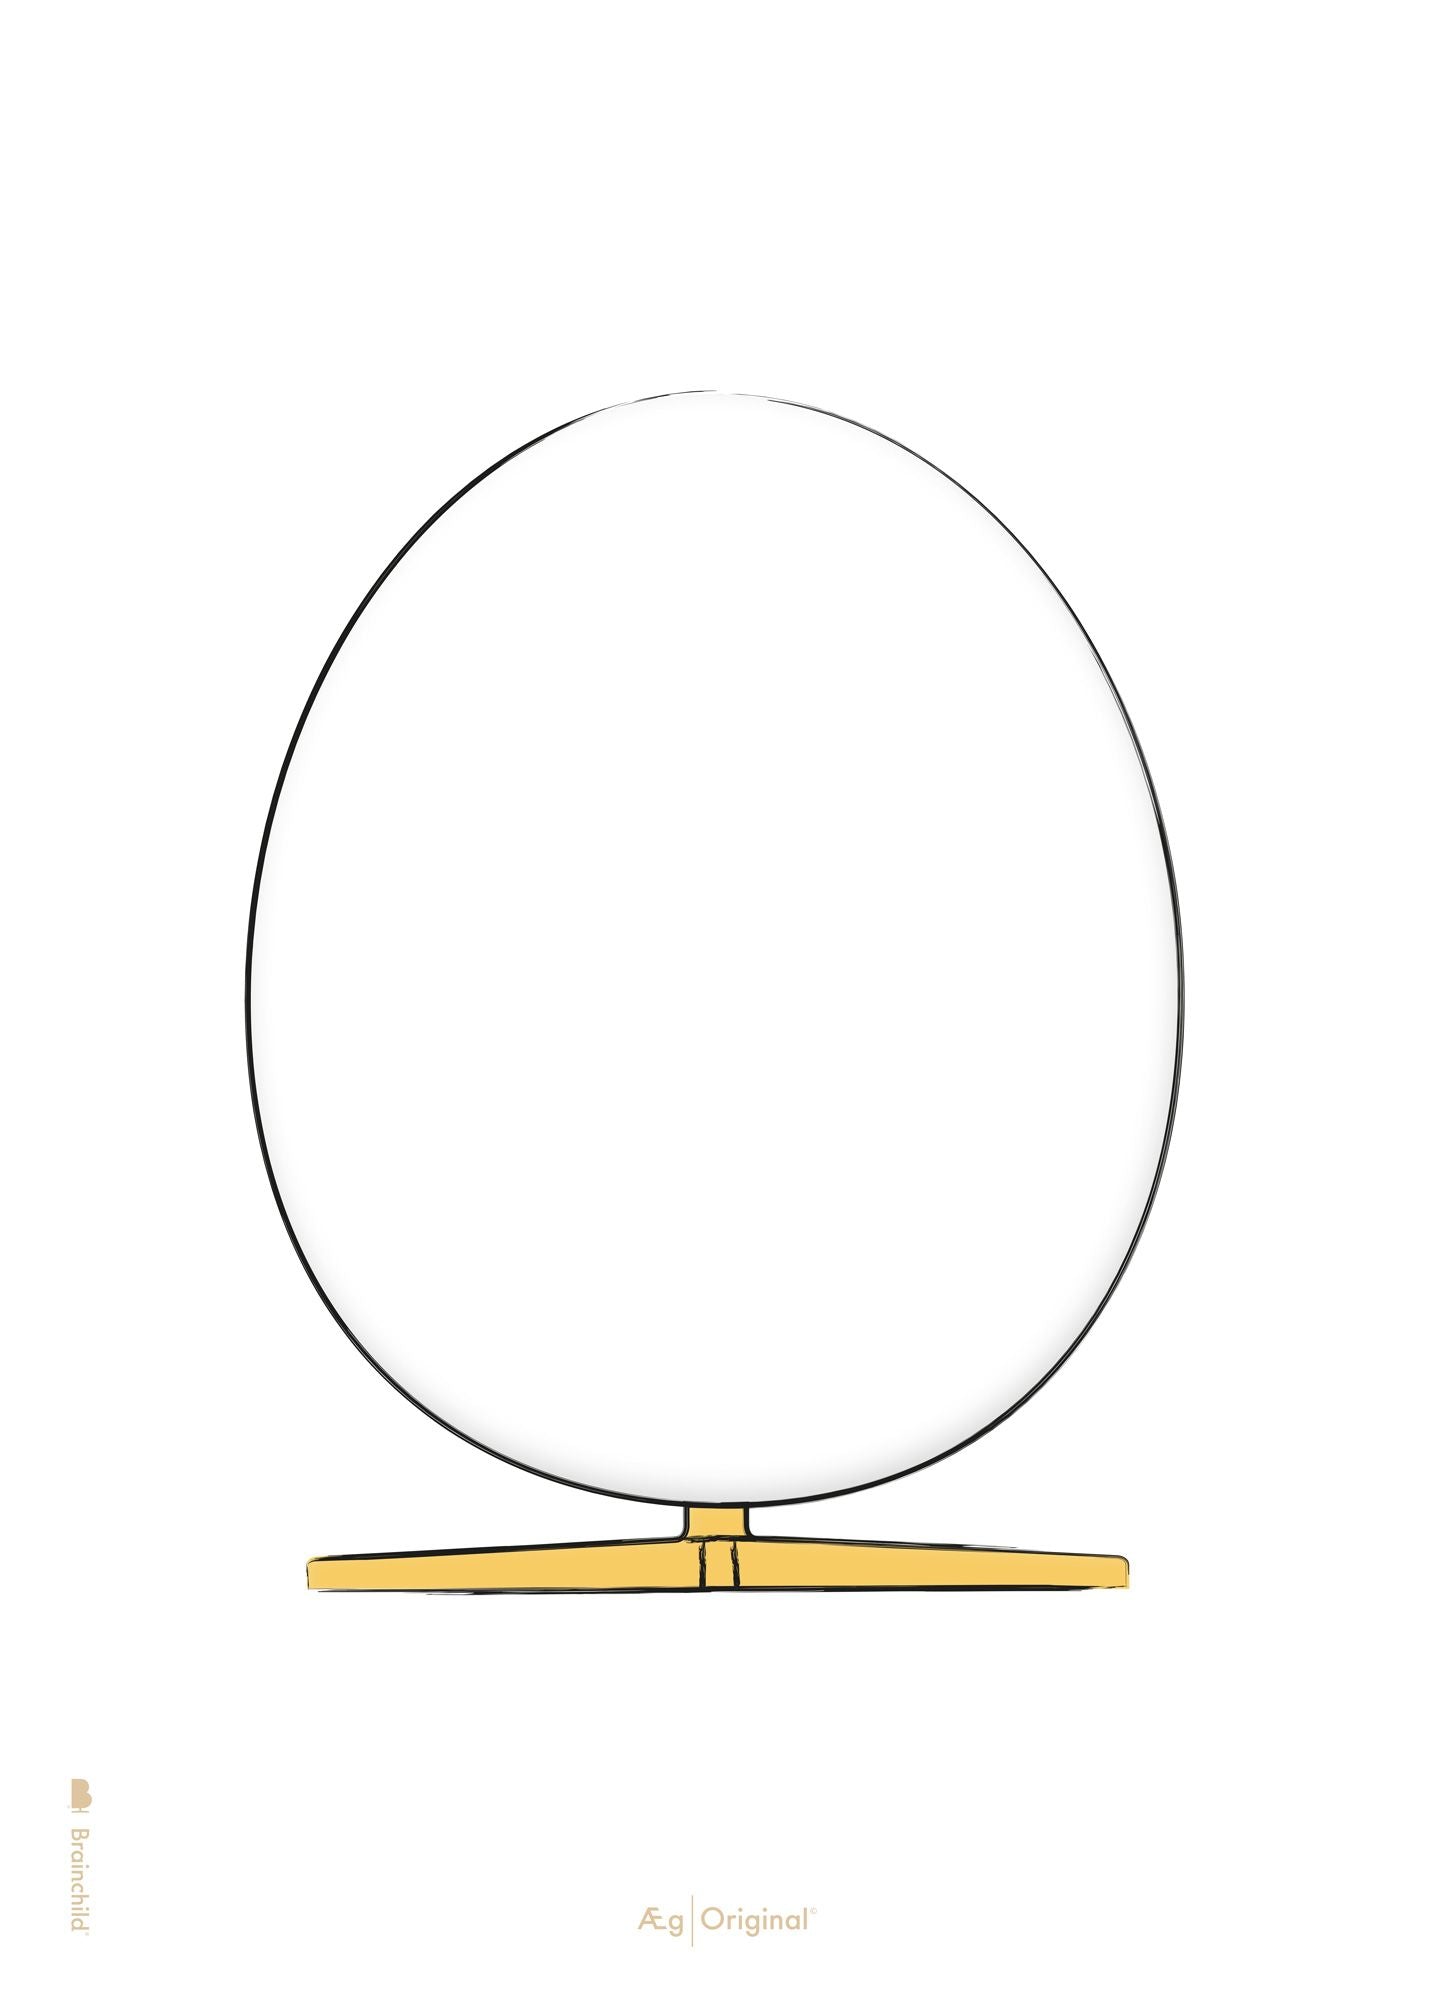 Brainchild äggdesignskissaffischen utan ram 30x40 cm, vit bakgrund